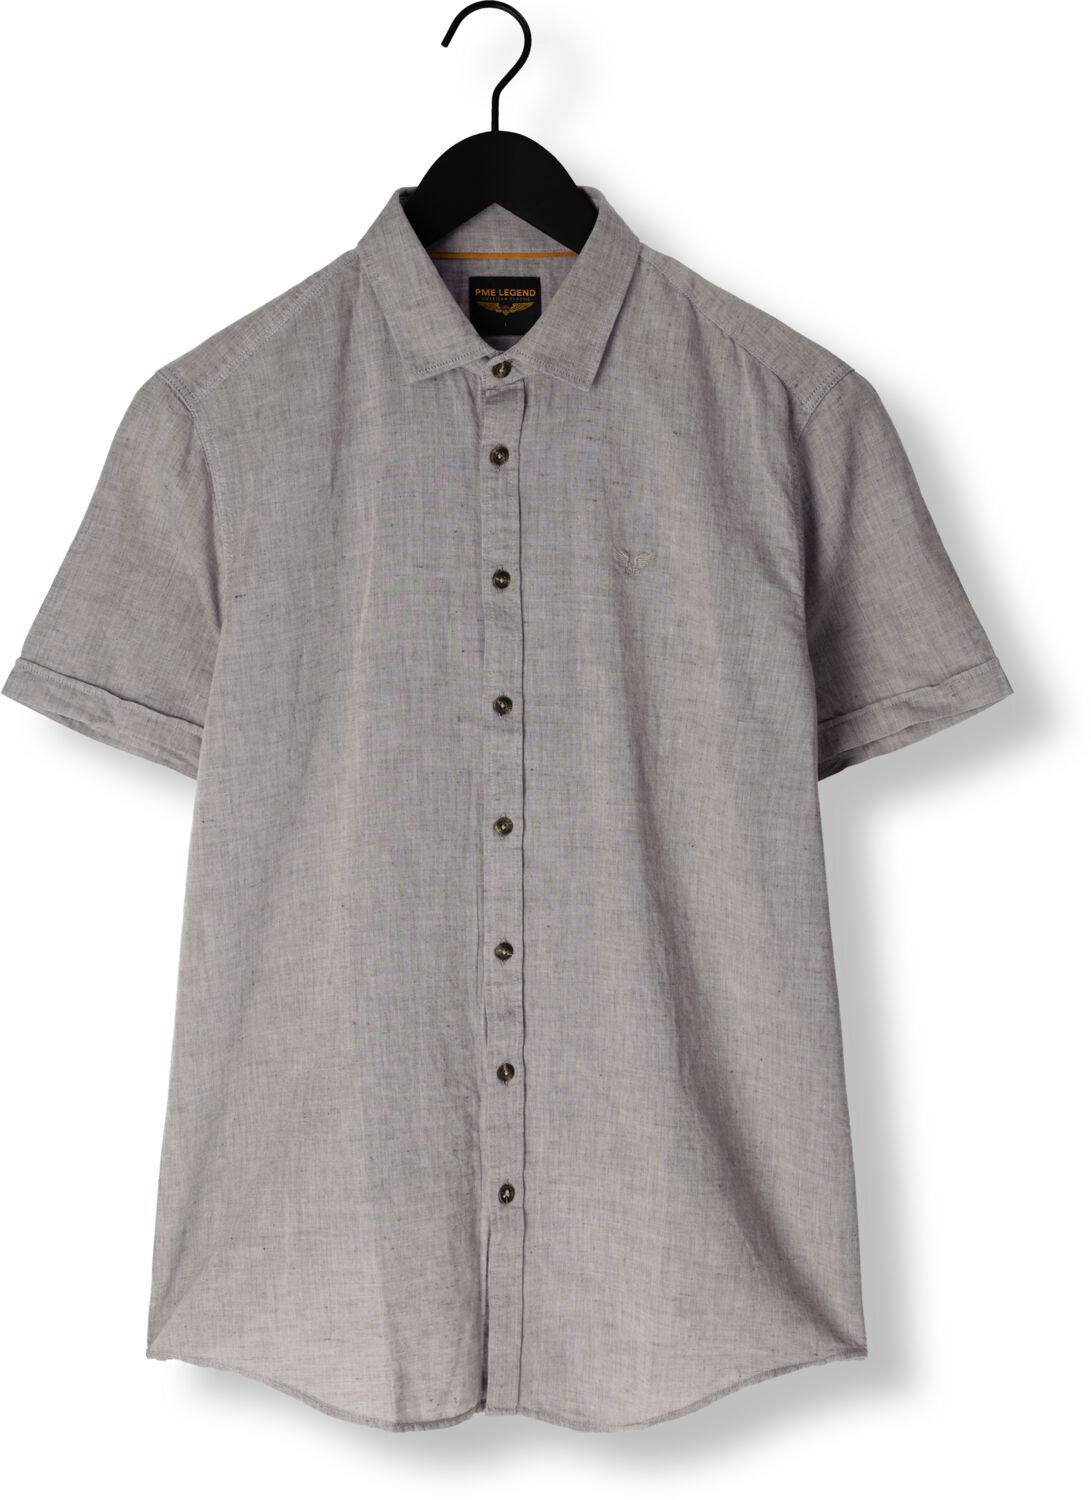 PME LEGEND Heren Overhemden Short Sleeve Shirt Ctn Linen 2tonen Owen Groen